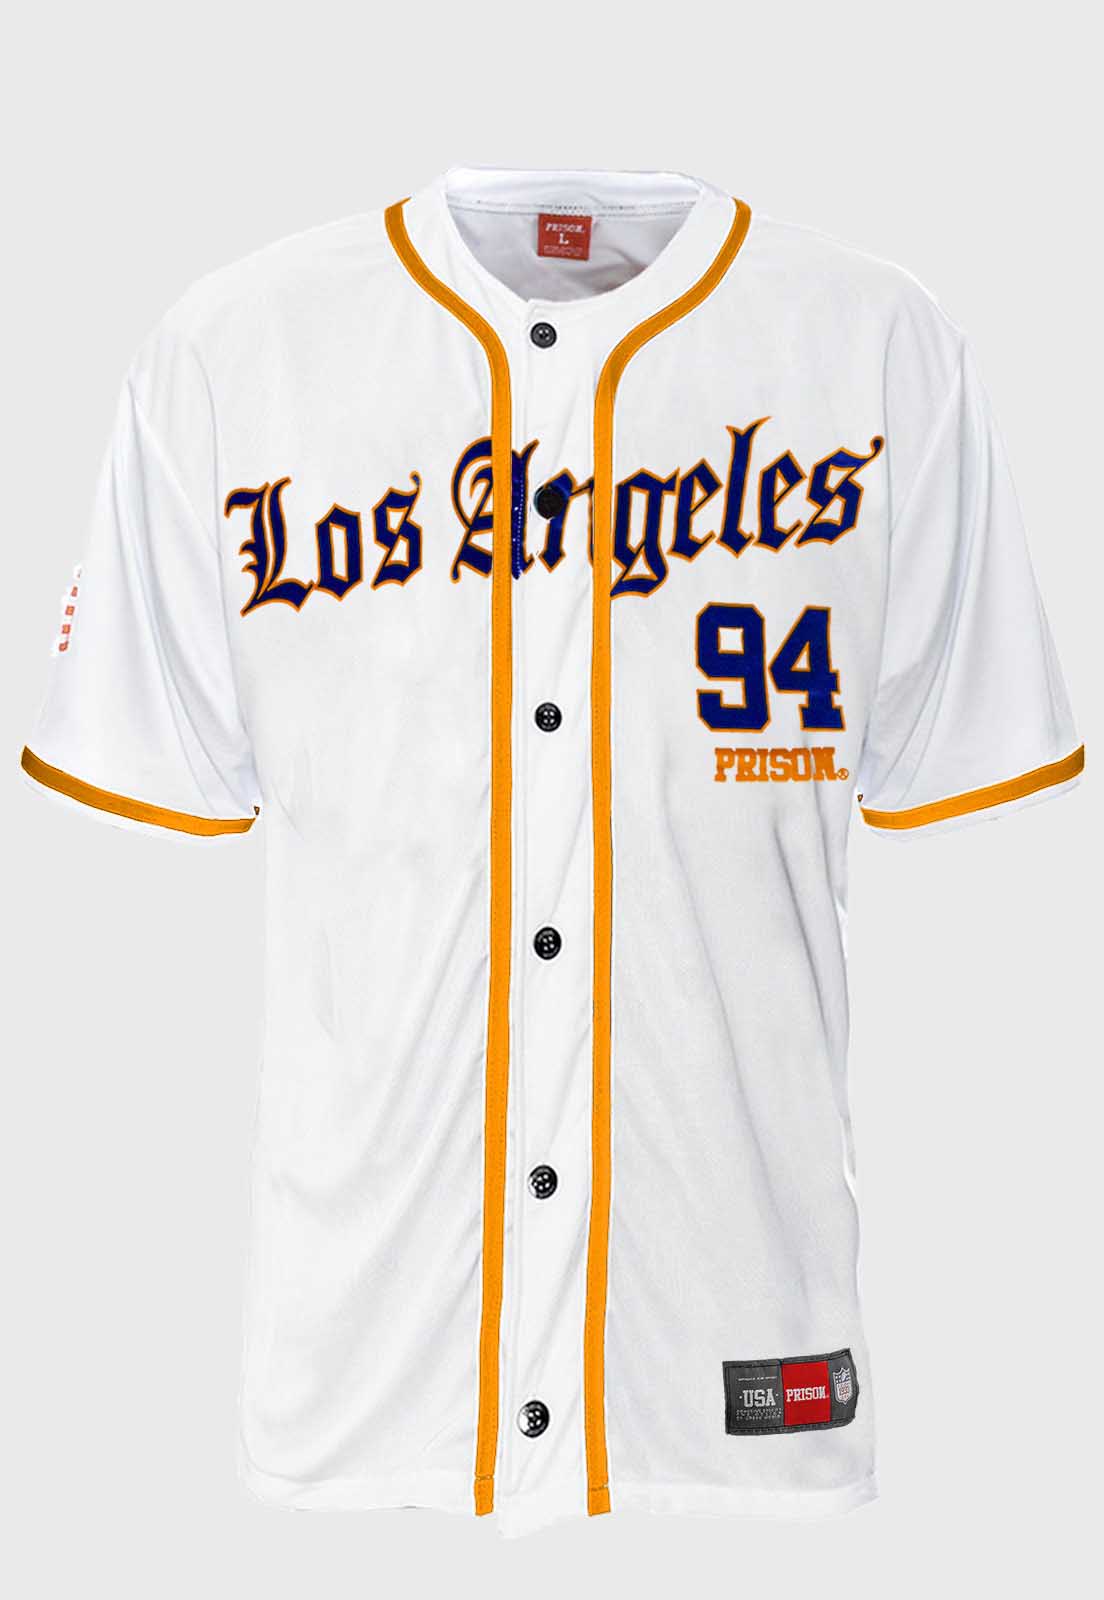 Camisa de Baseball Prison Los Angeles 94 Branca